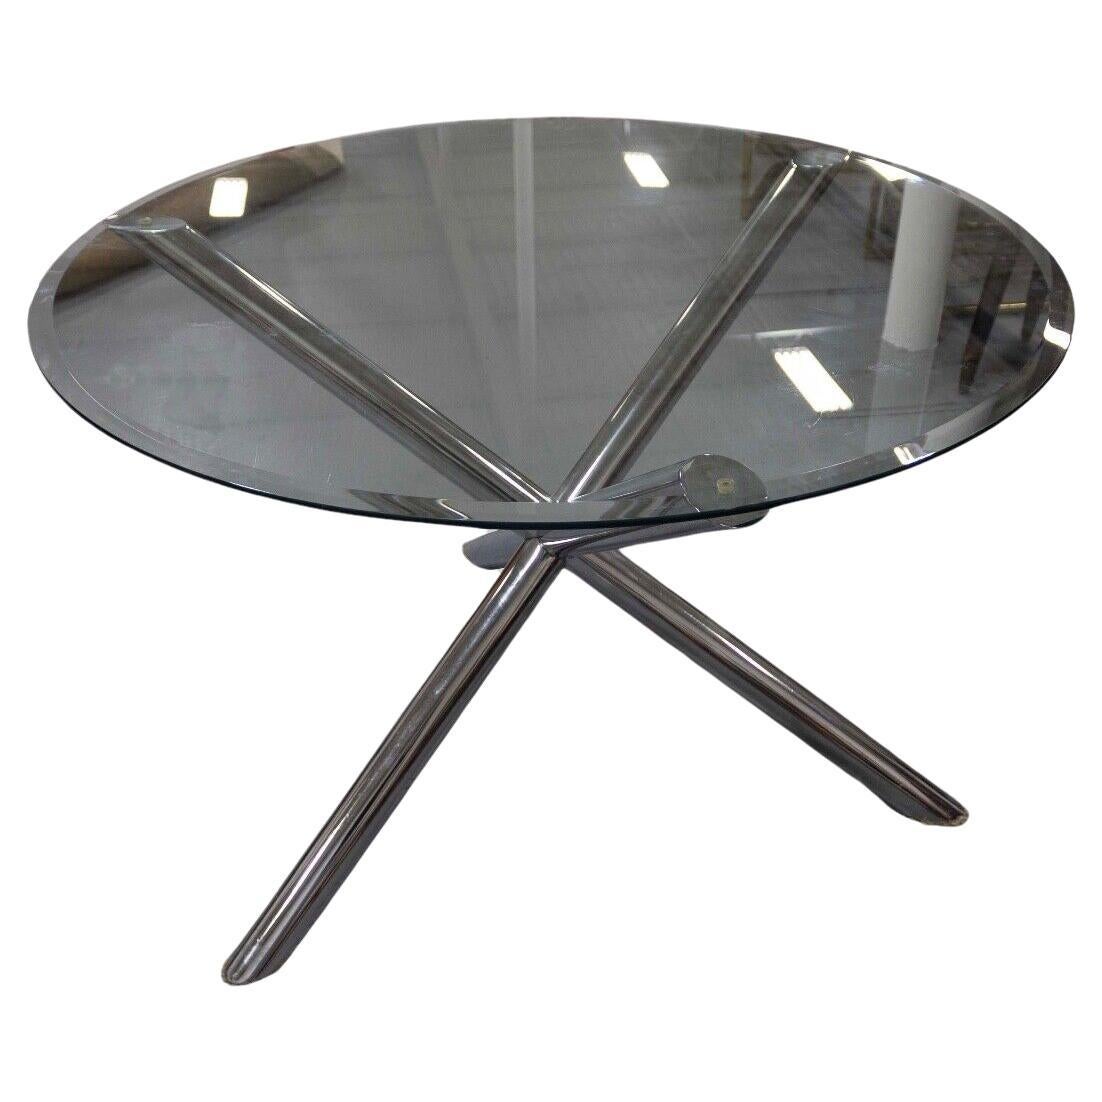 Renato Zevi Dining Round Dinette Chrome Table Gekreuzte Beine Contemporary Modern